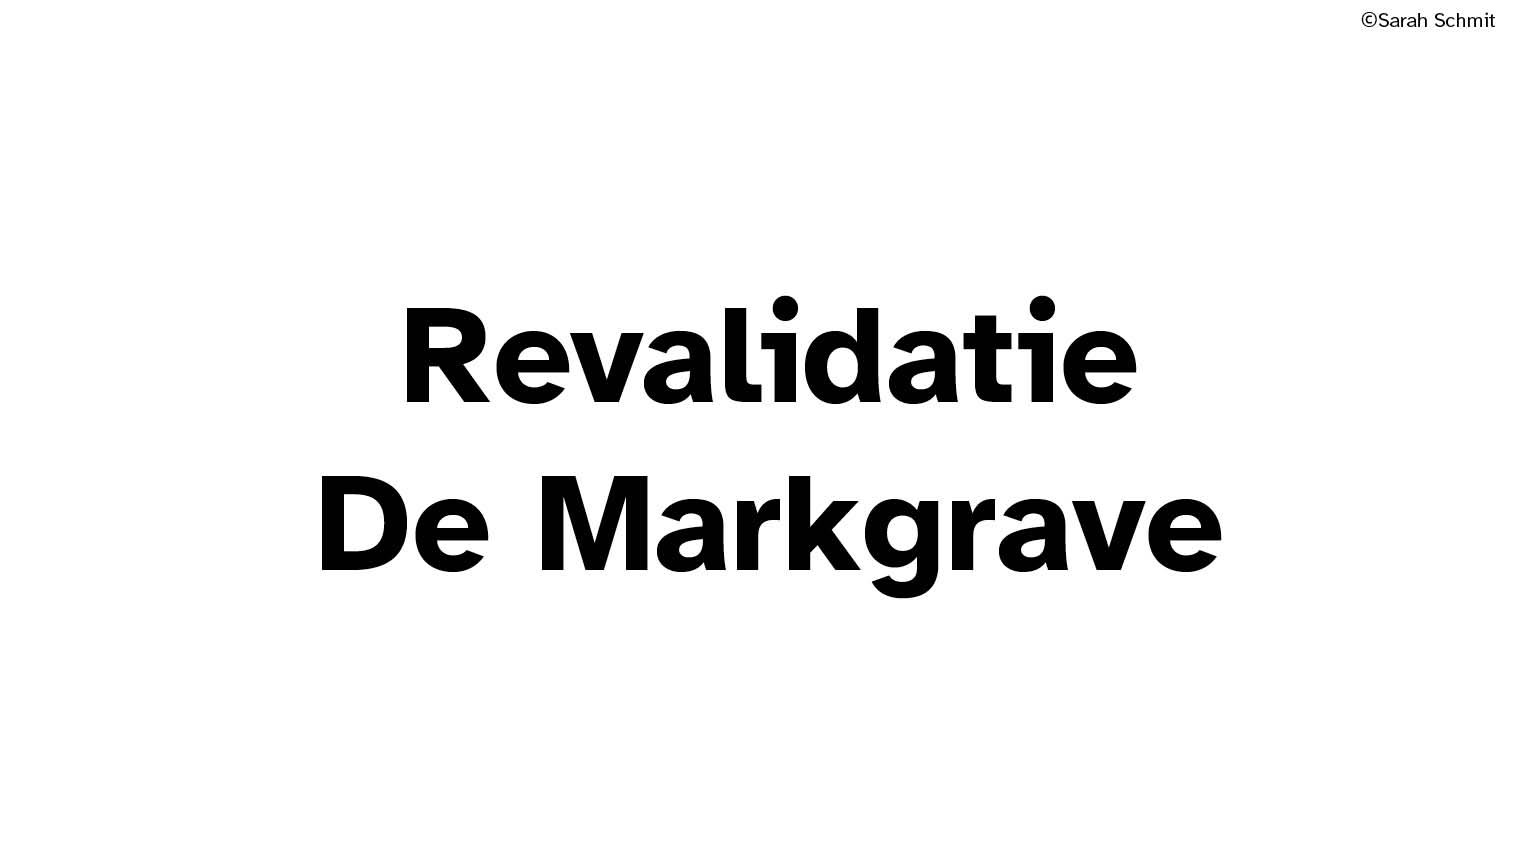 De Markgrave